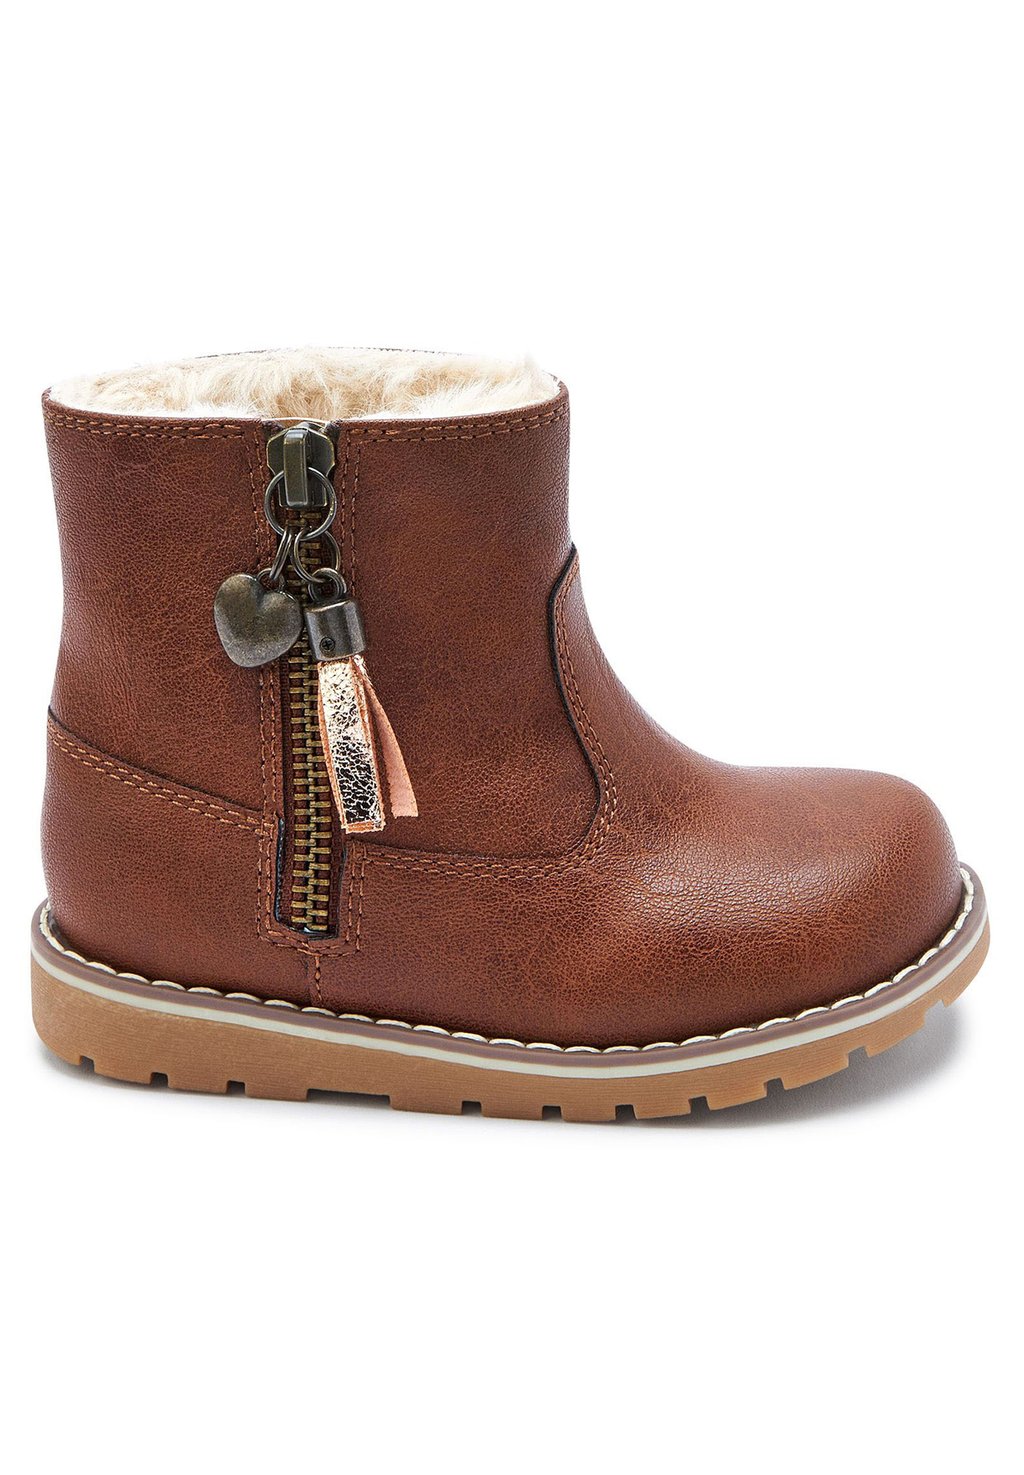 Снегоступы/зимние ботинки Next, цвет tan brown